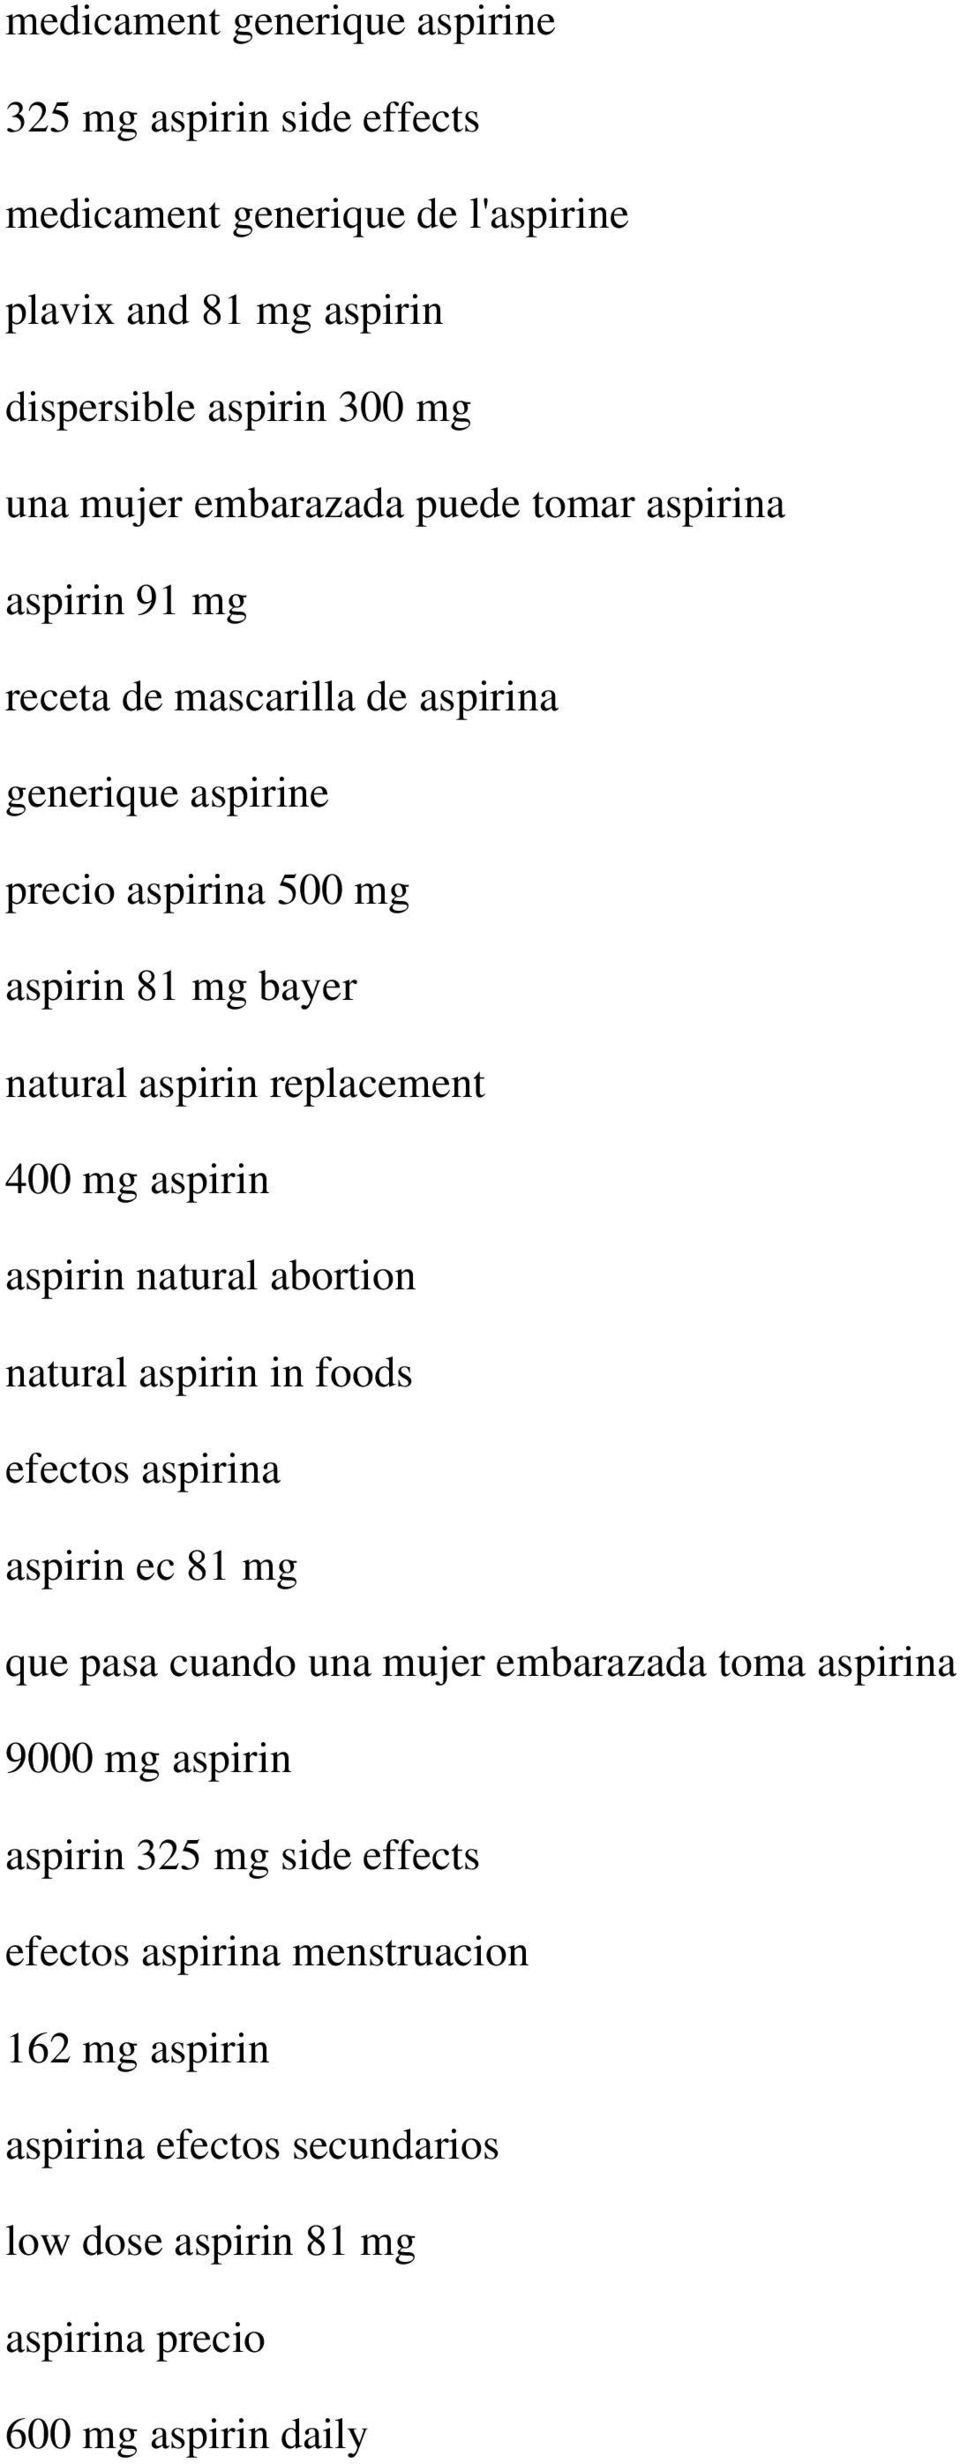 replacement 400 mg aspirin aspirin natural abortion natural aspirin in foods efectos aspirina aspirin ec 81 mg que pasa cuando una mujer embarazada toma aspirina